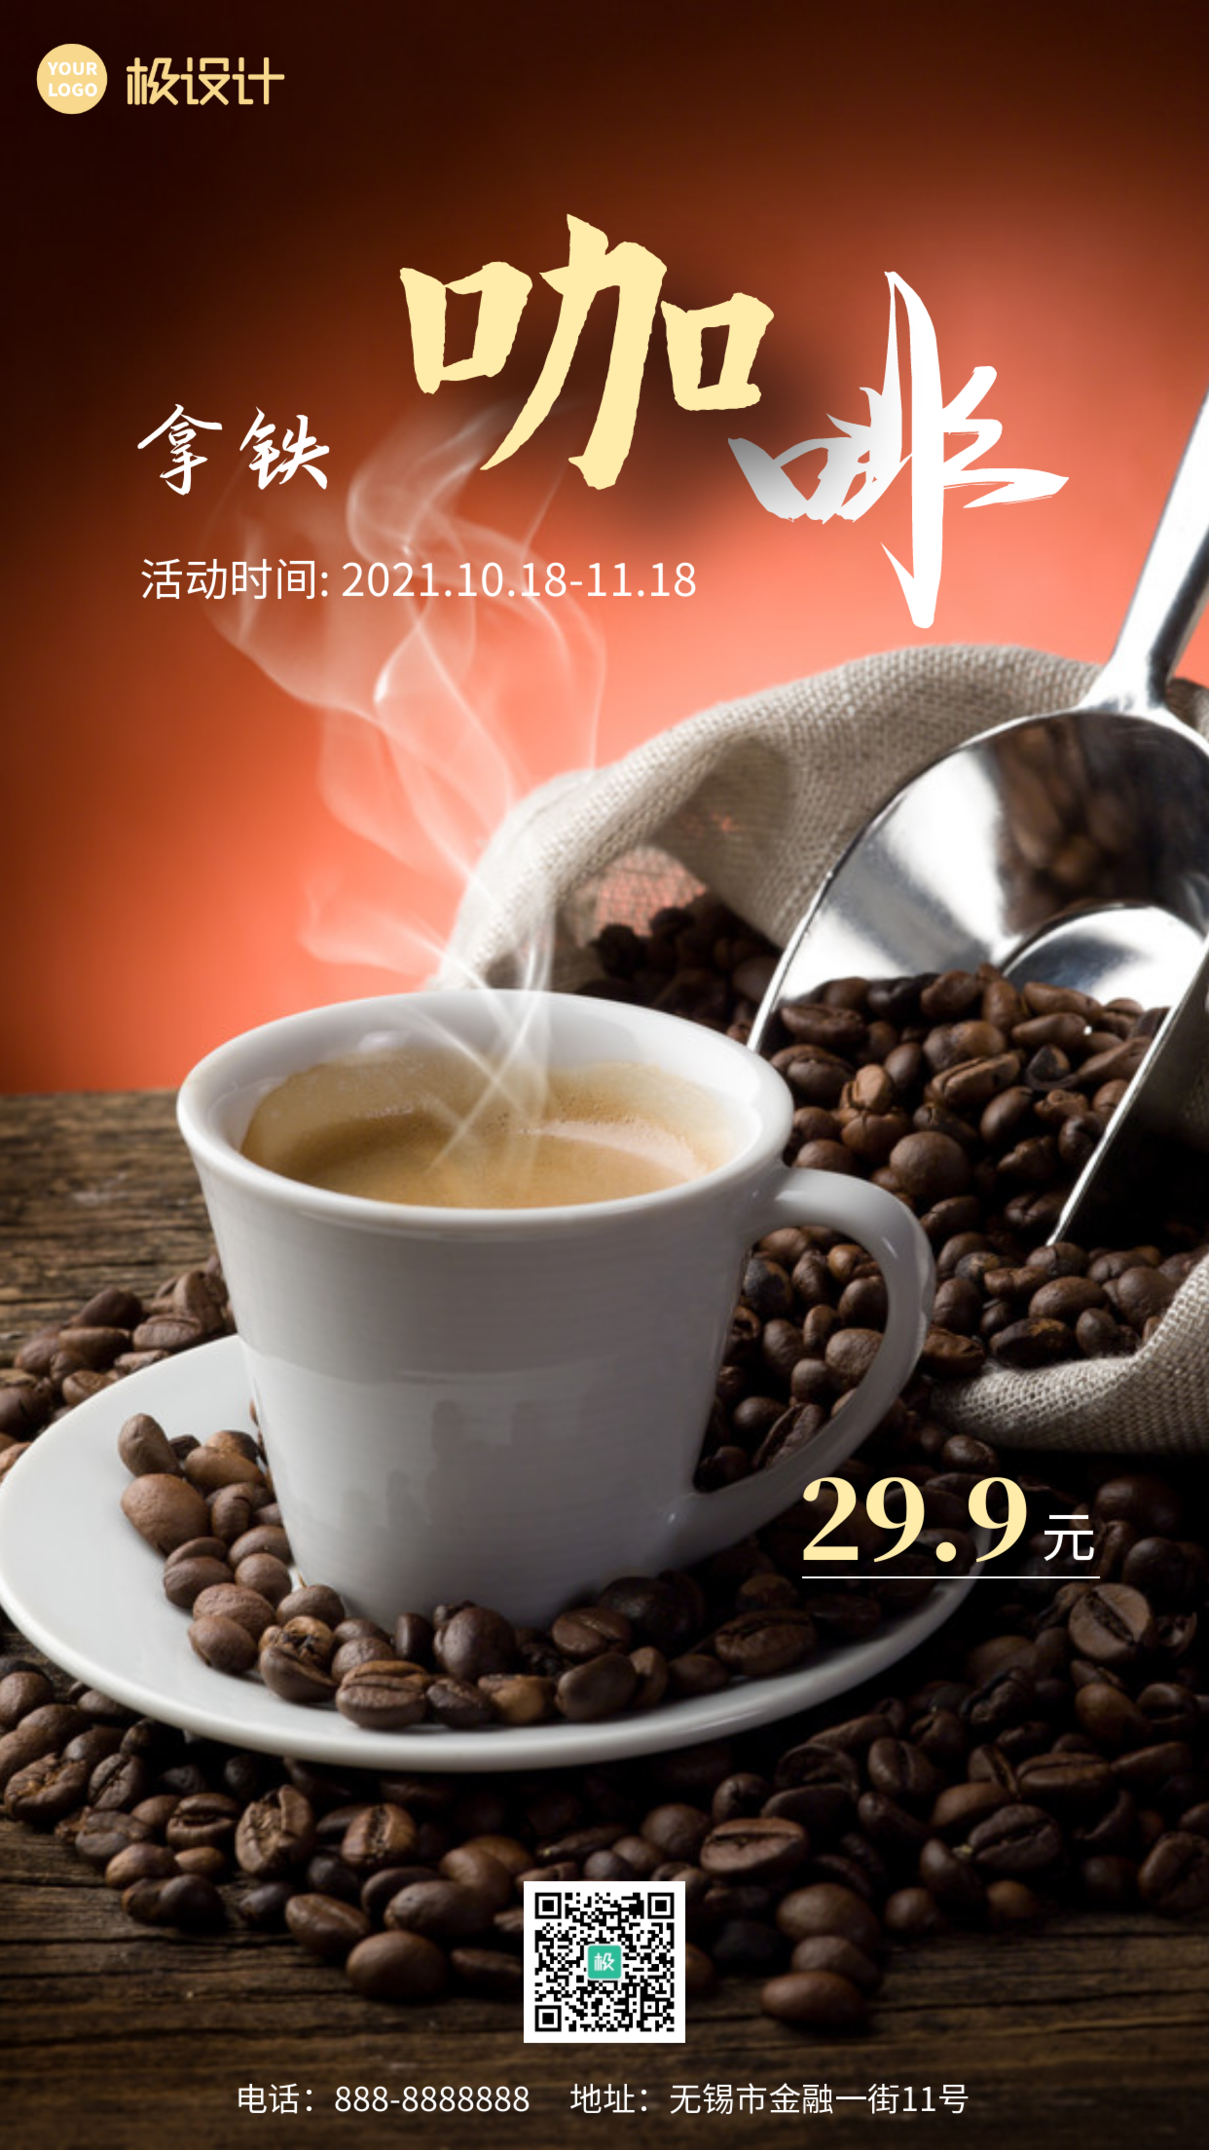 醇厚拿铁咖啡产品宣传摄影图海报